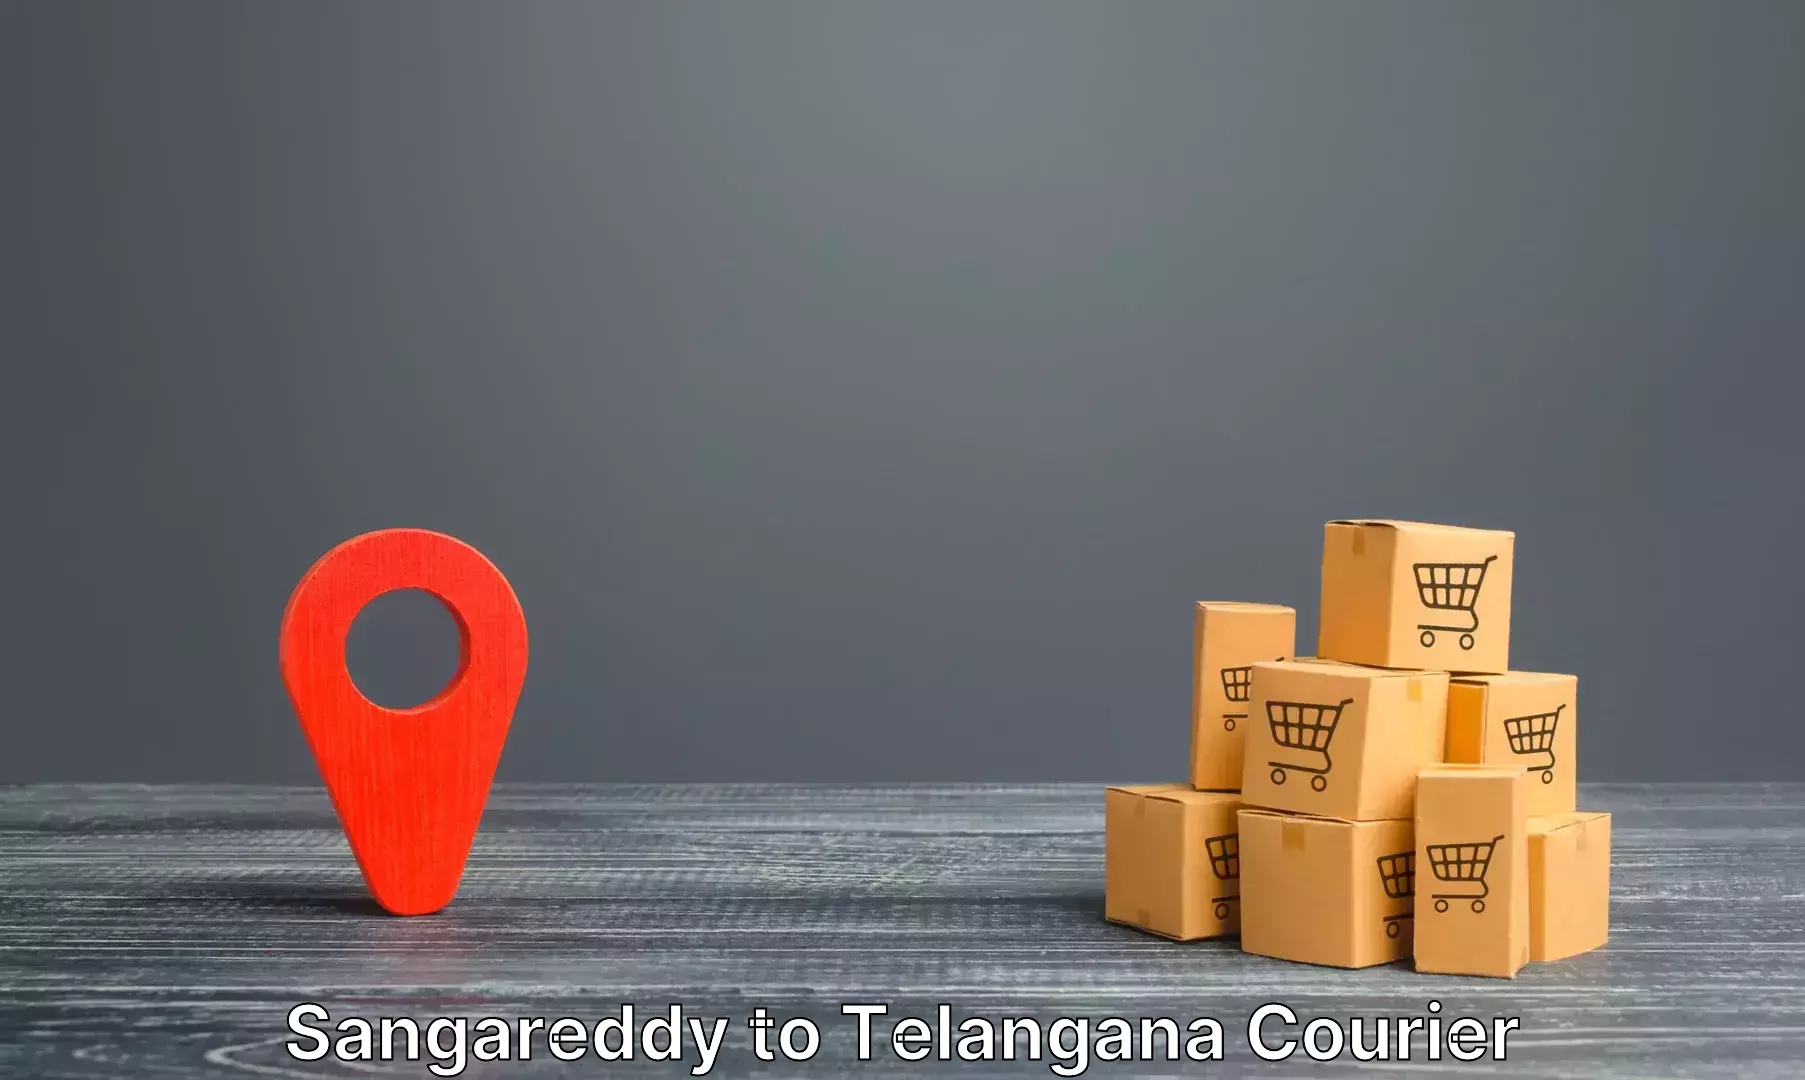 Baggage relocation service Sangareddy to Bellampalli